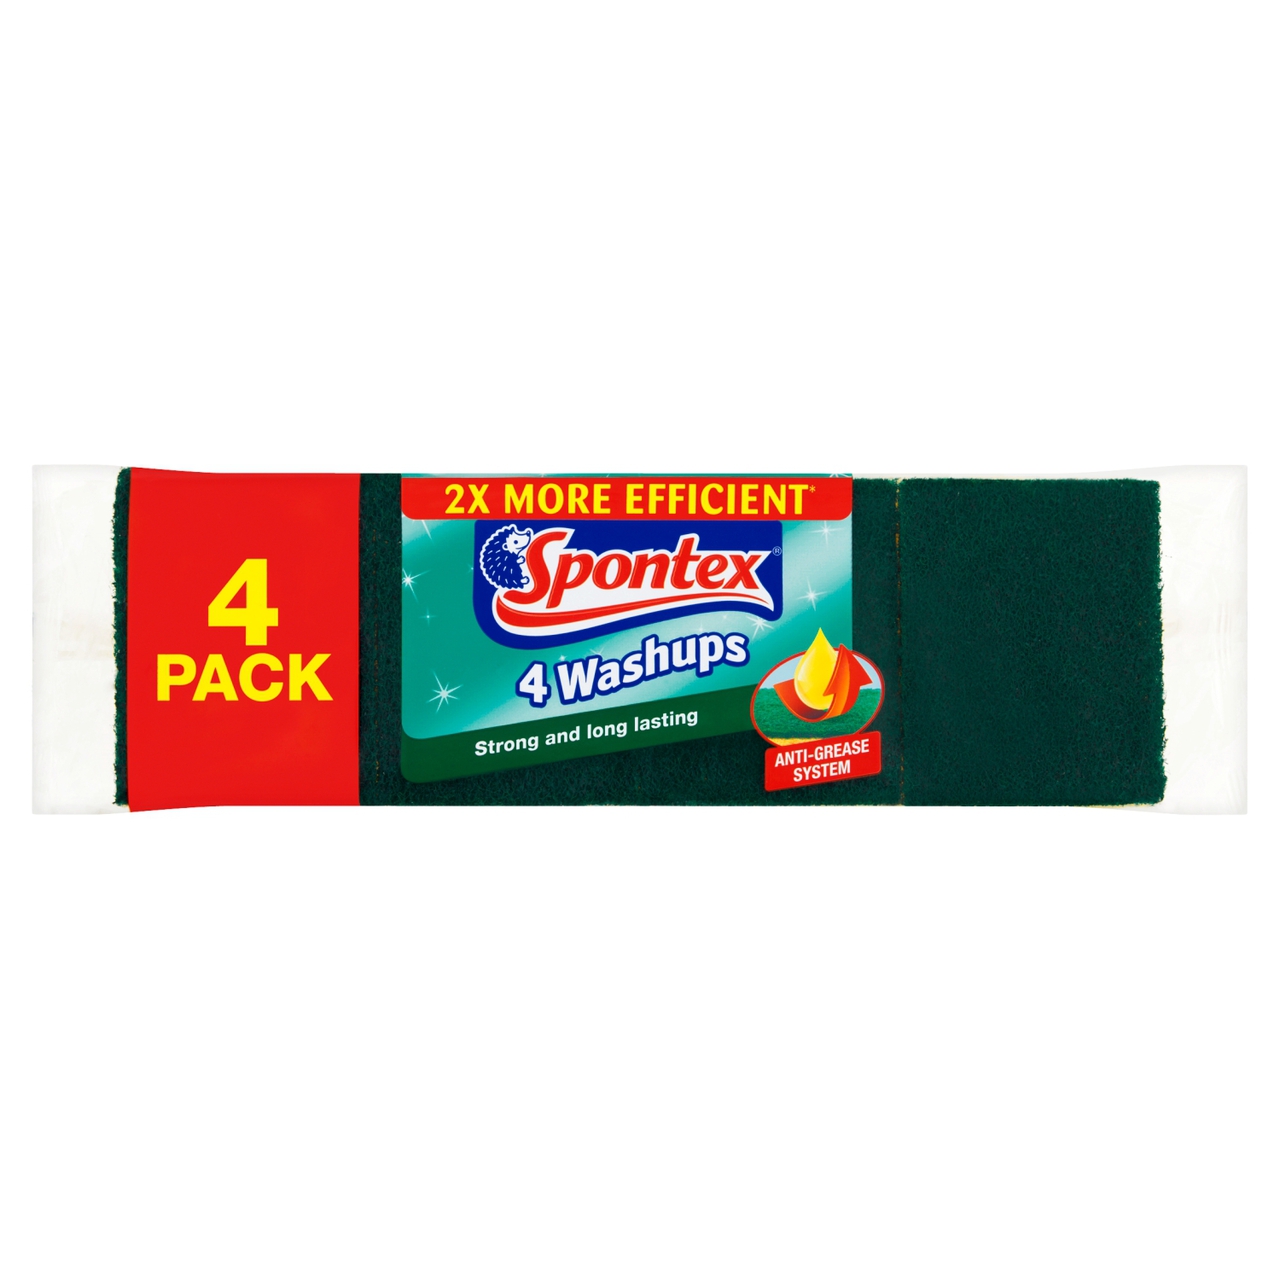 Spontex Washups 4 per pack